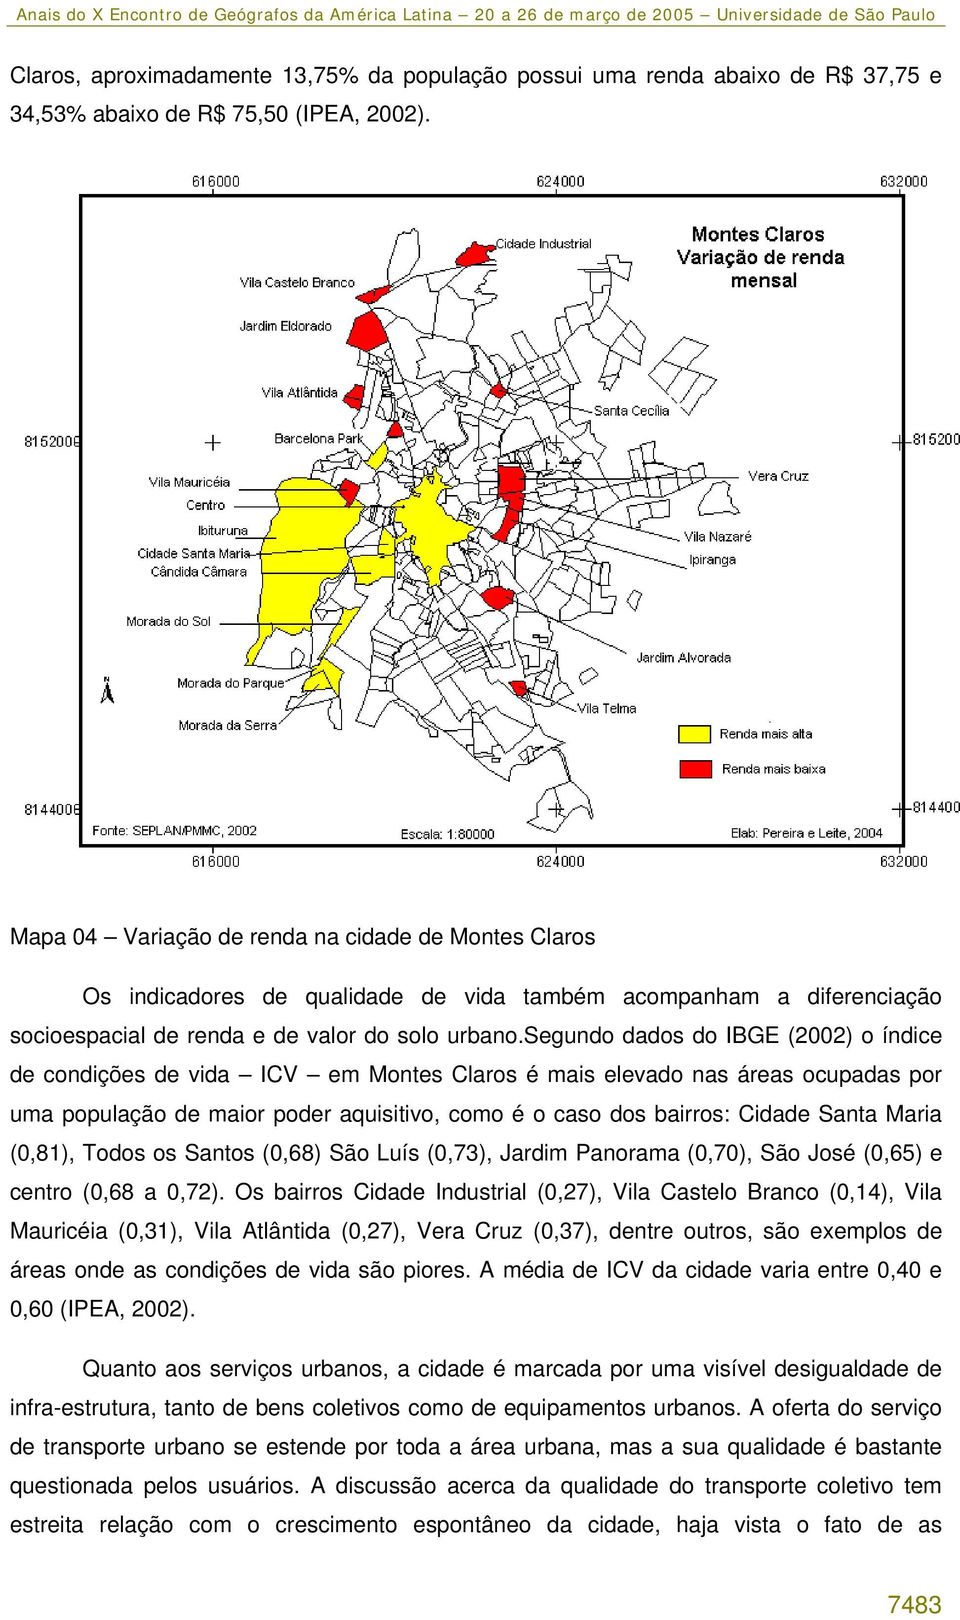 segundo dados do IBGE (2002) o índice de condições de vida ICV em Montes Claros é mais elevado nas áreas ocupadas por uma população de maior poder aquisitivo, como é o caso dos bairros: Cidade Santa